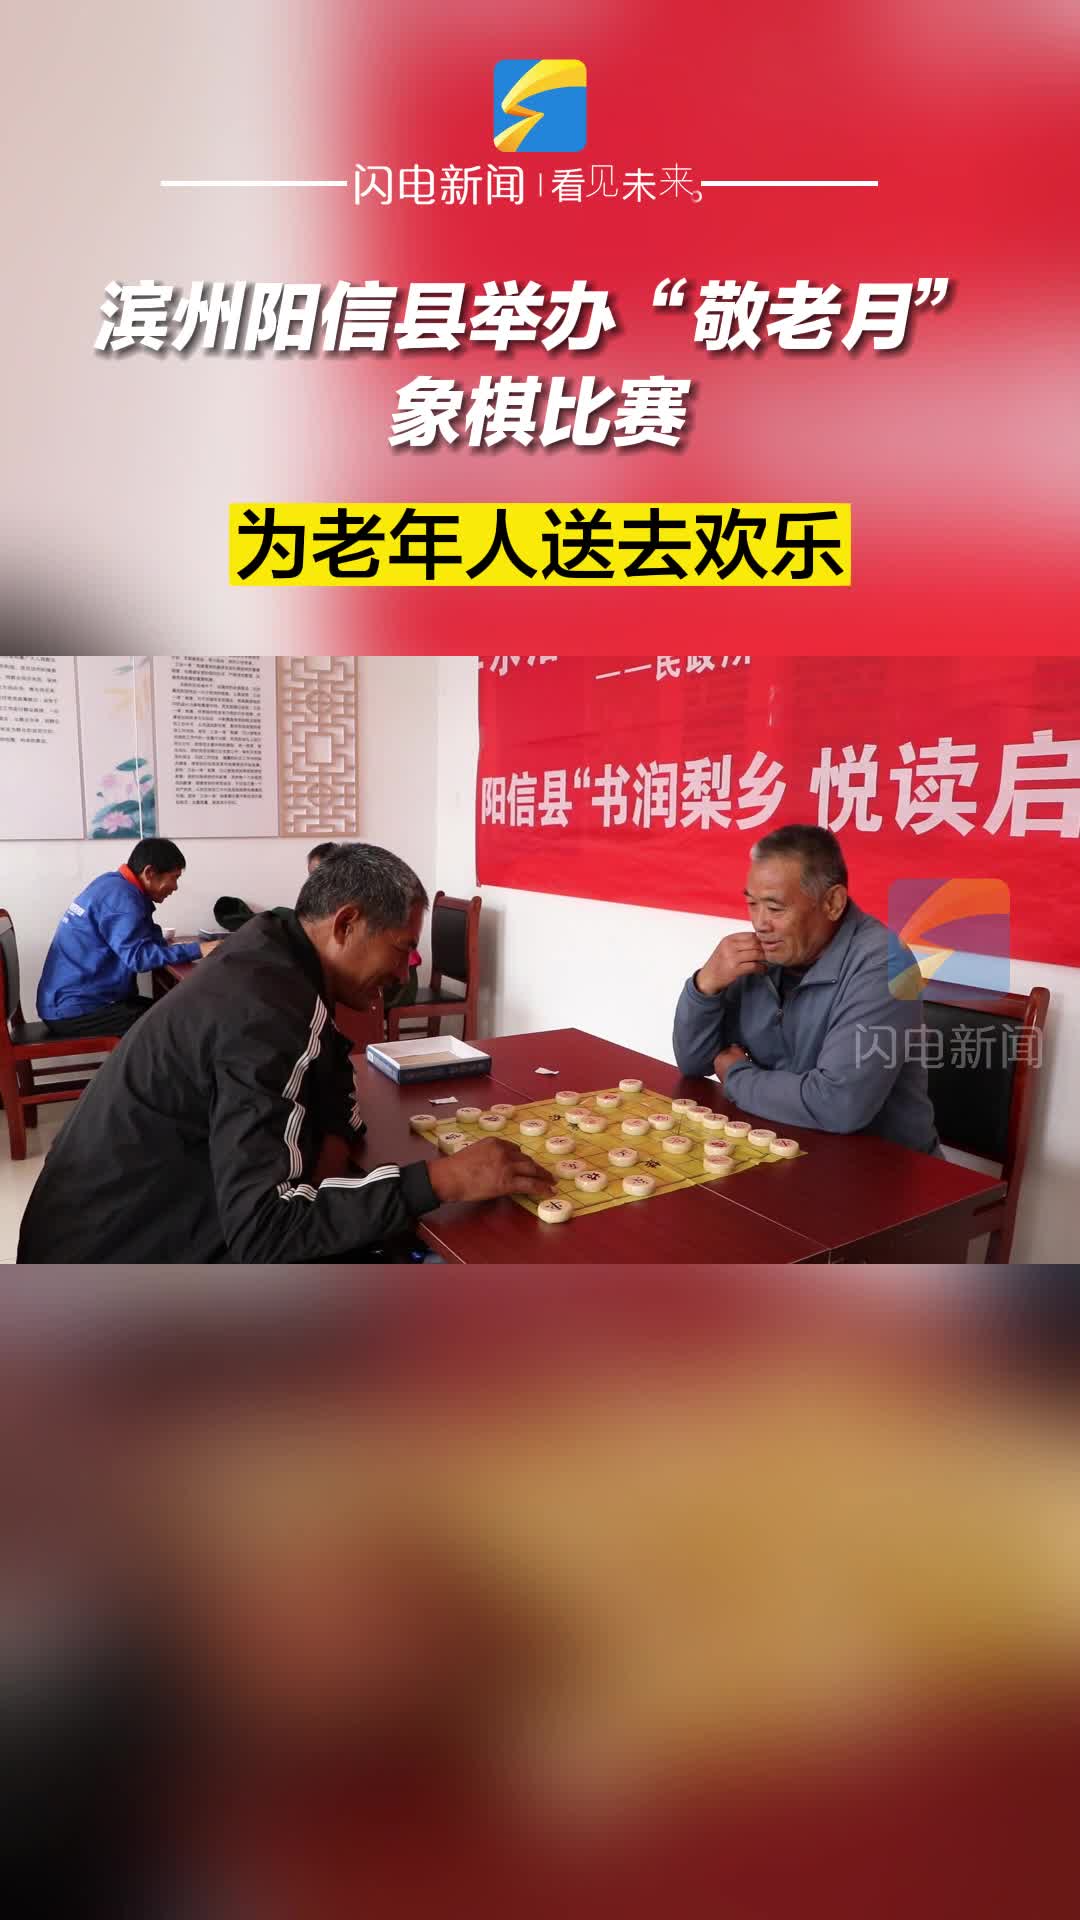 滨州阳信县举办“敬老月”象棋比赛 为老年人送去欢乐